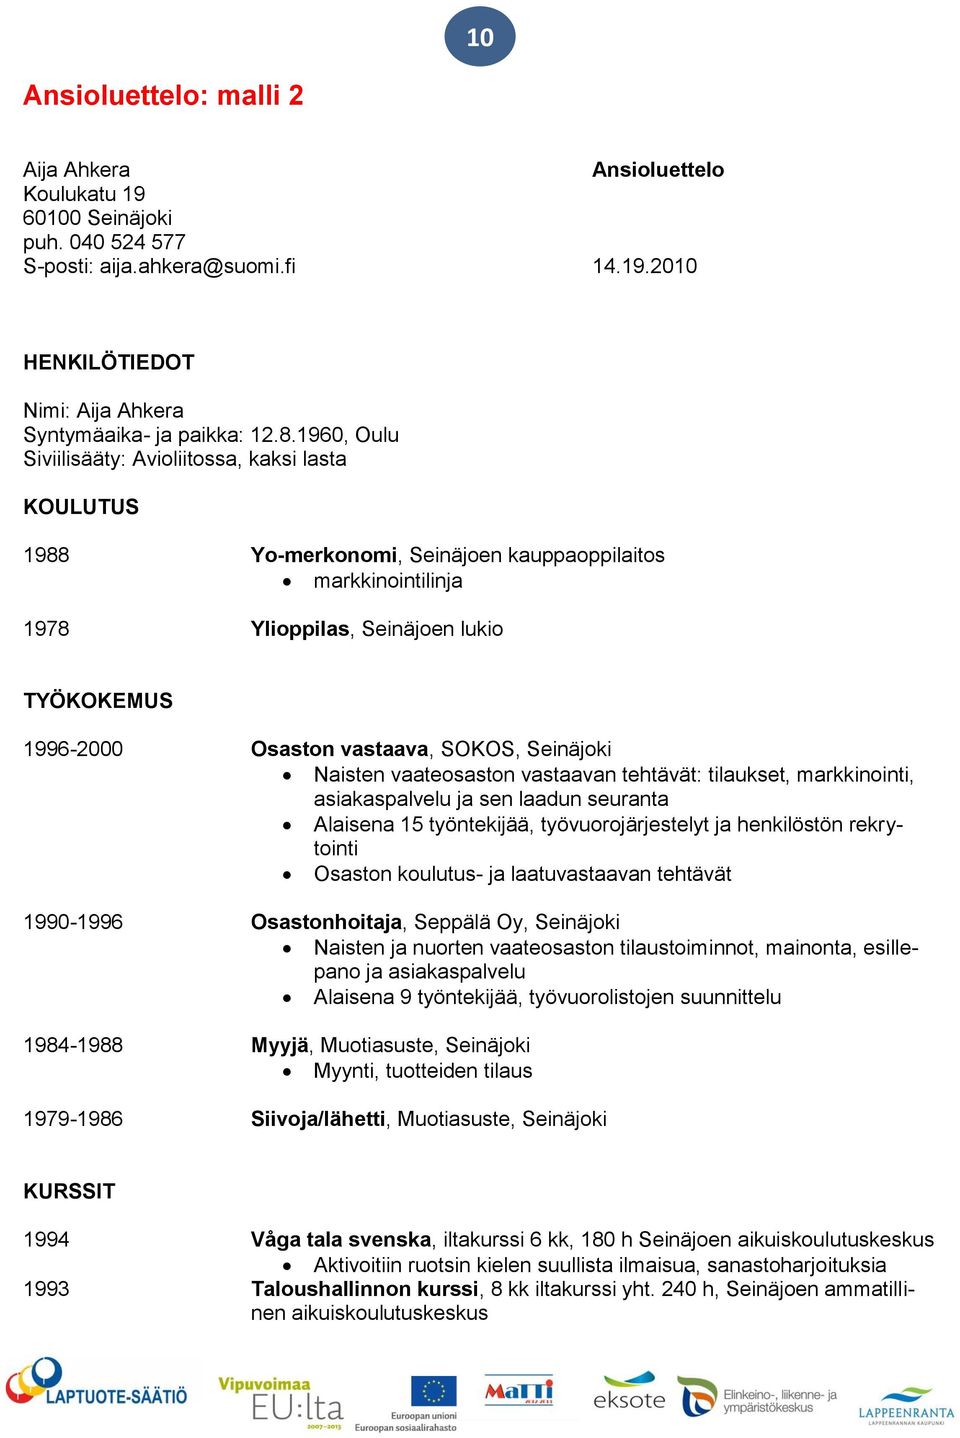 SOKOS, Seinäjoki Naisten vaateosaston vastaavan tehtävät: tilaukset, markkinointi, asiakaspalvelu ja sen laadun seuranta Alaisena 15 työntekijää, työvuorojärjestelyt ja henkilöstön rekrytointi